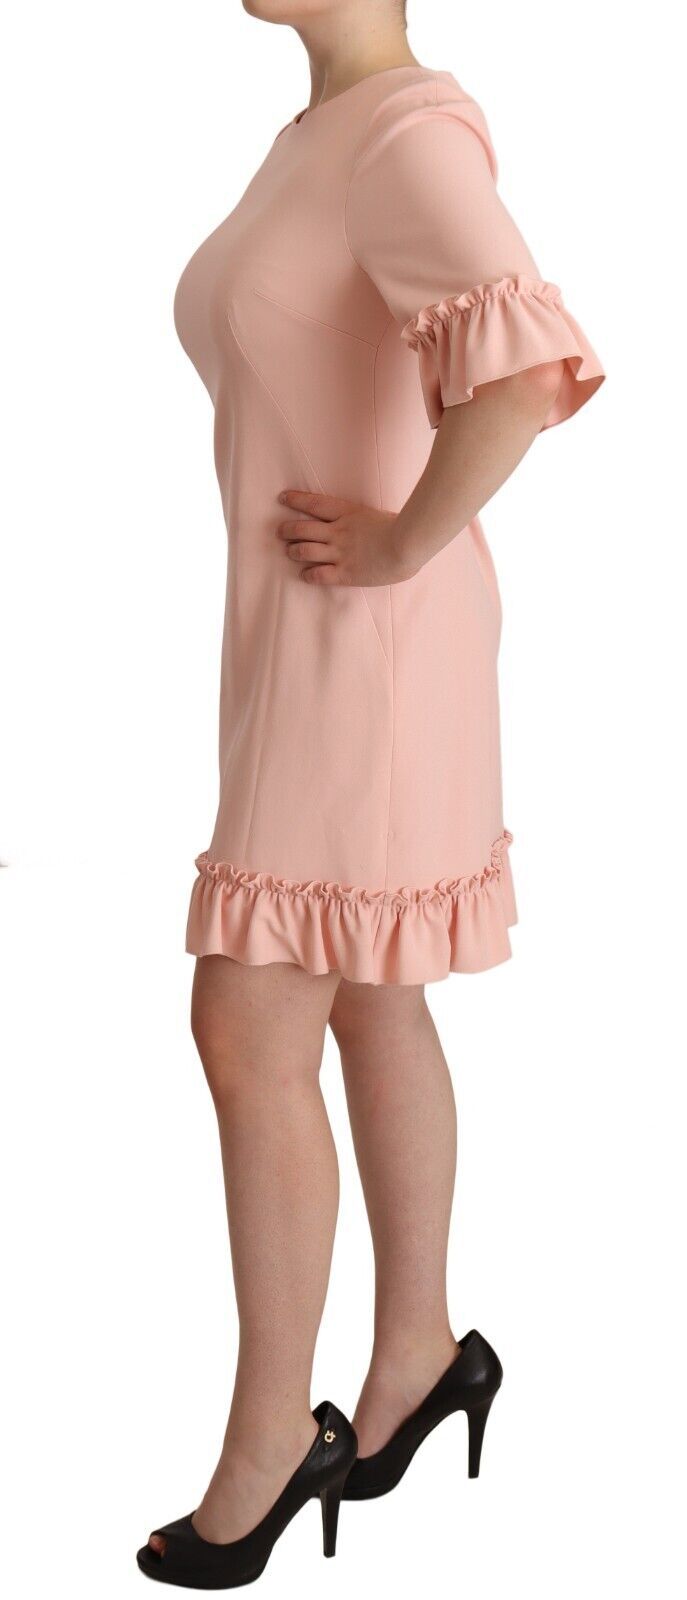 Ruffled Sleeve Sheath Dress in Pink